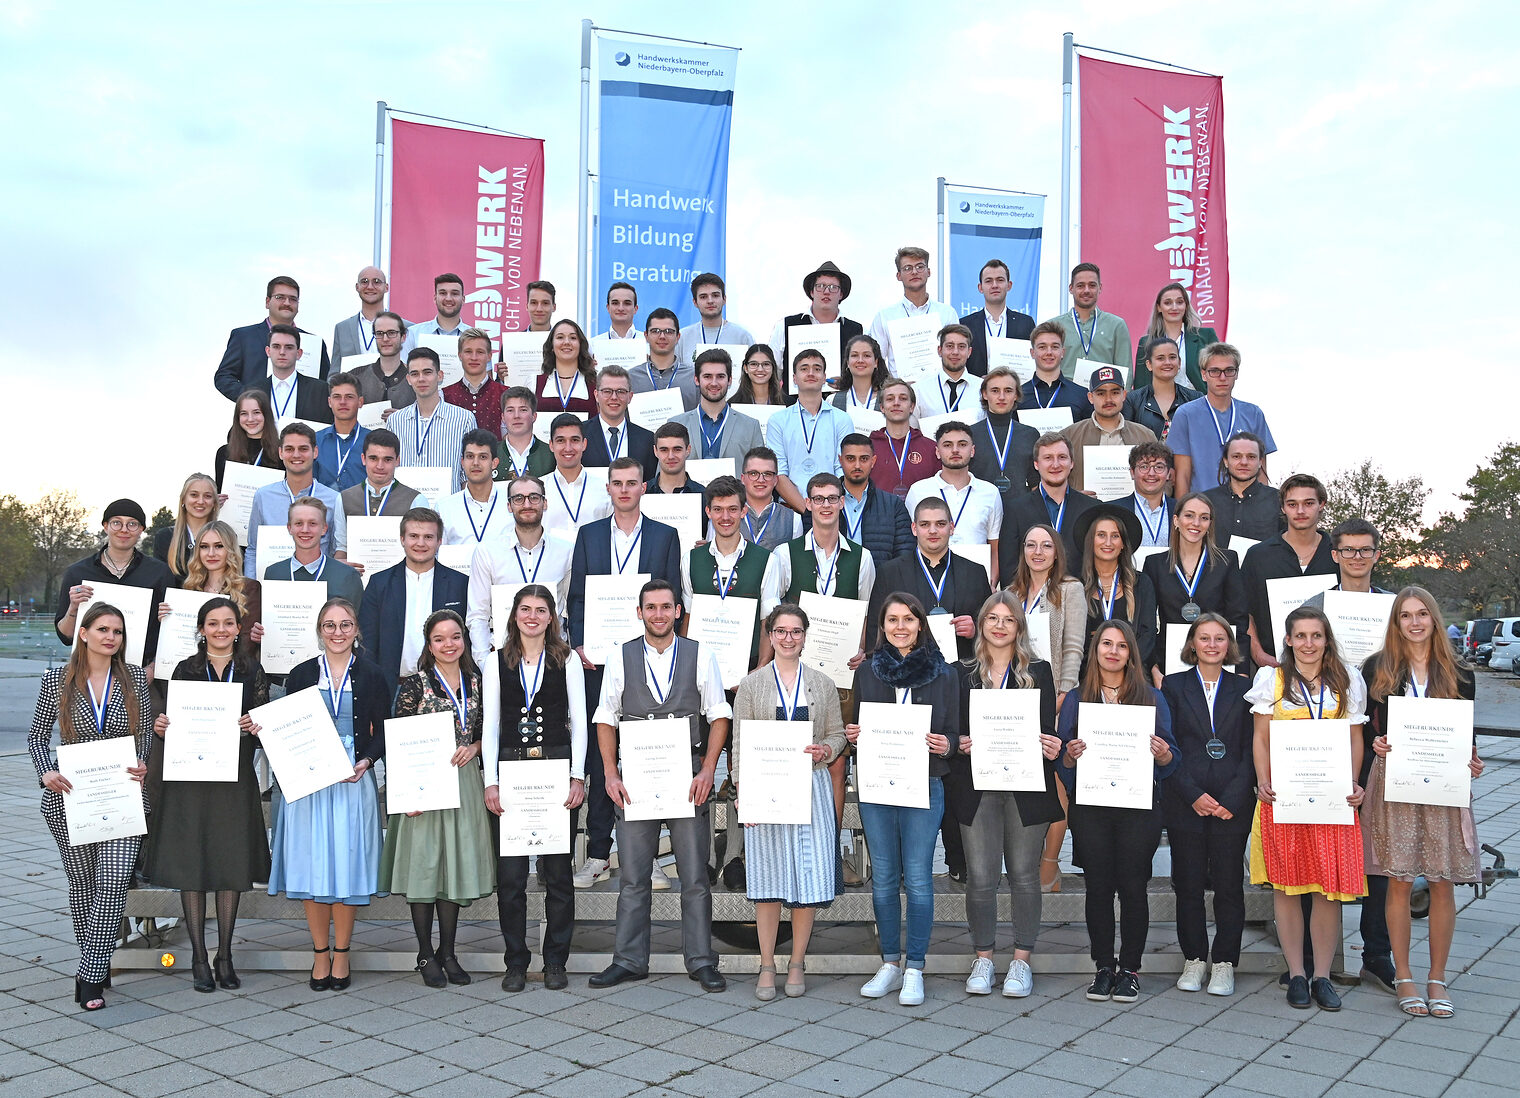 103 Landessiegerinnen und Landessieger des Leistungswettbewerbs des Deutschen Handwerks (PLW) wurden in Straubing geehrt.